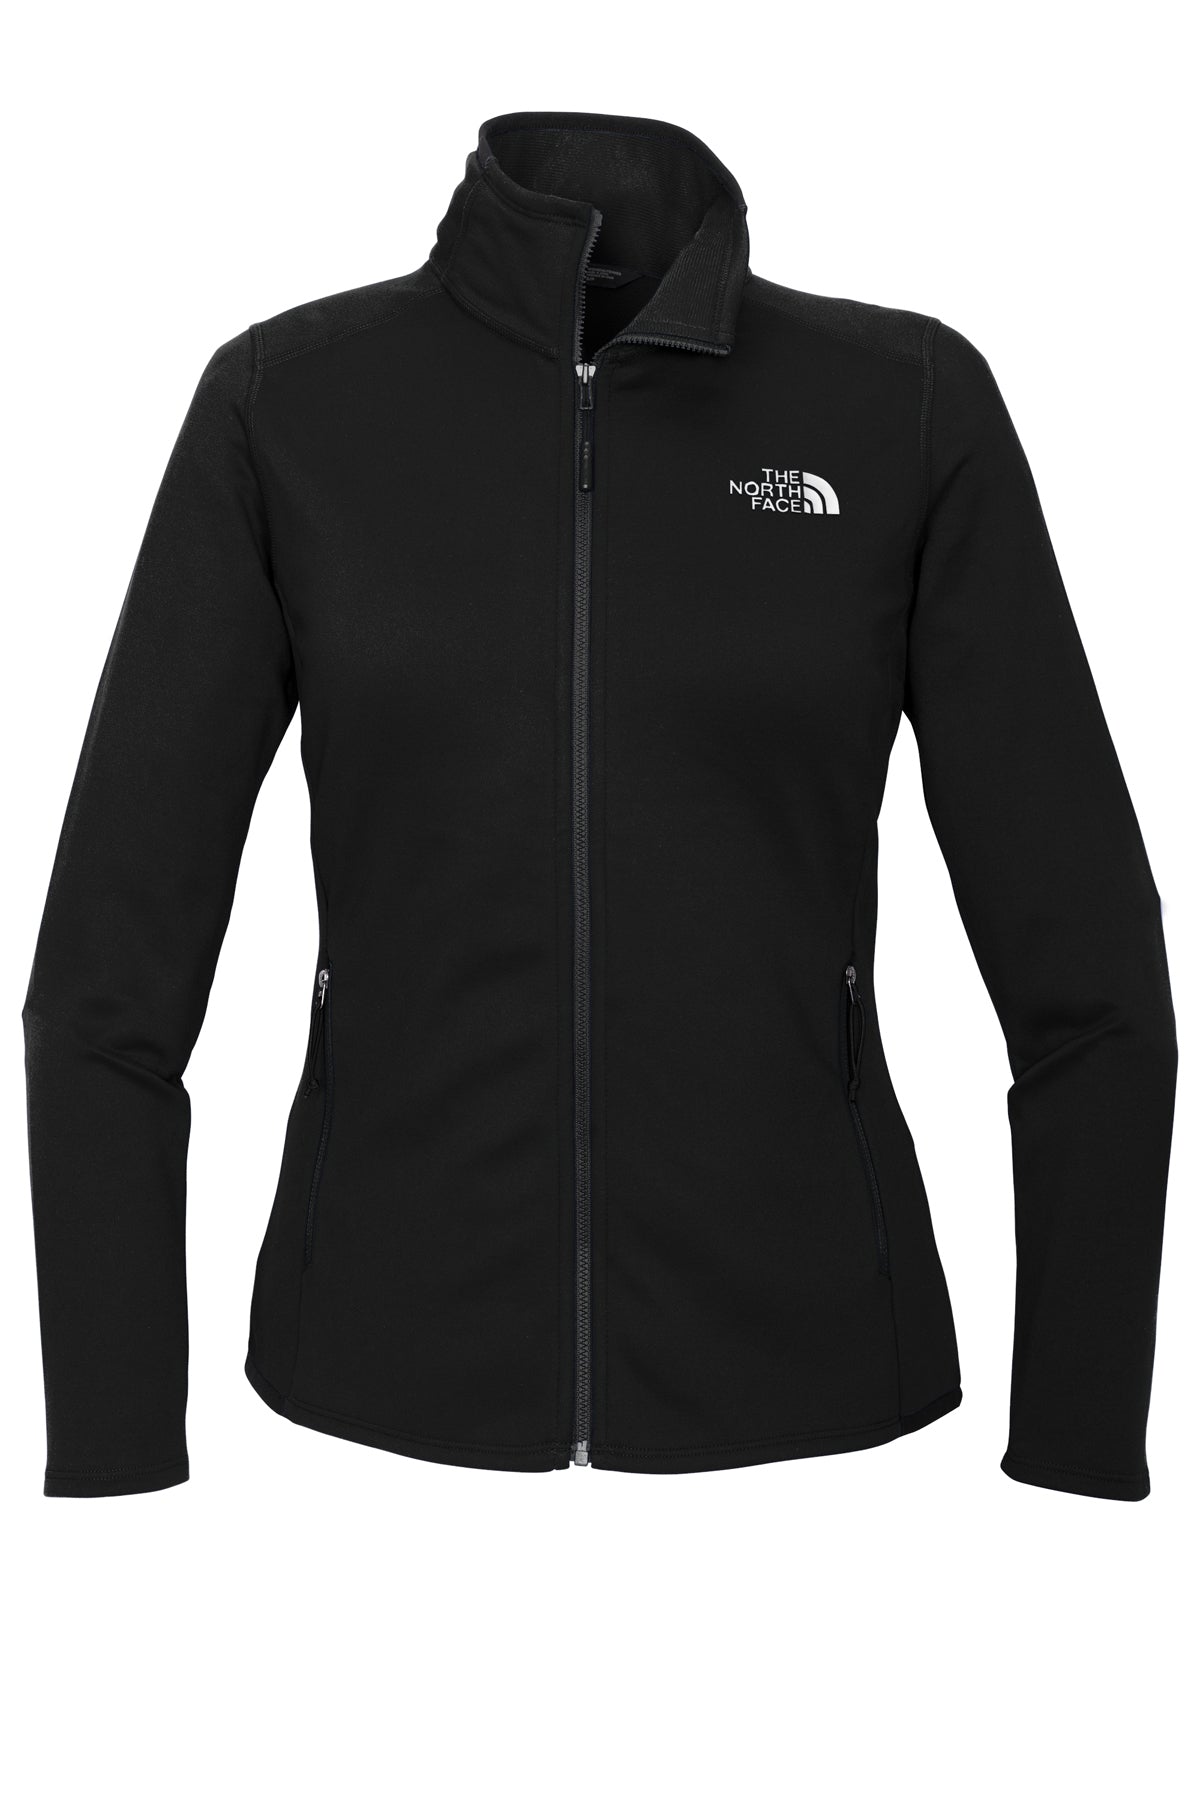 The North Face ® Women's Skyline Full-Zip Fleece Jacket